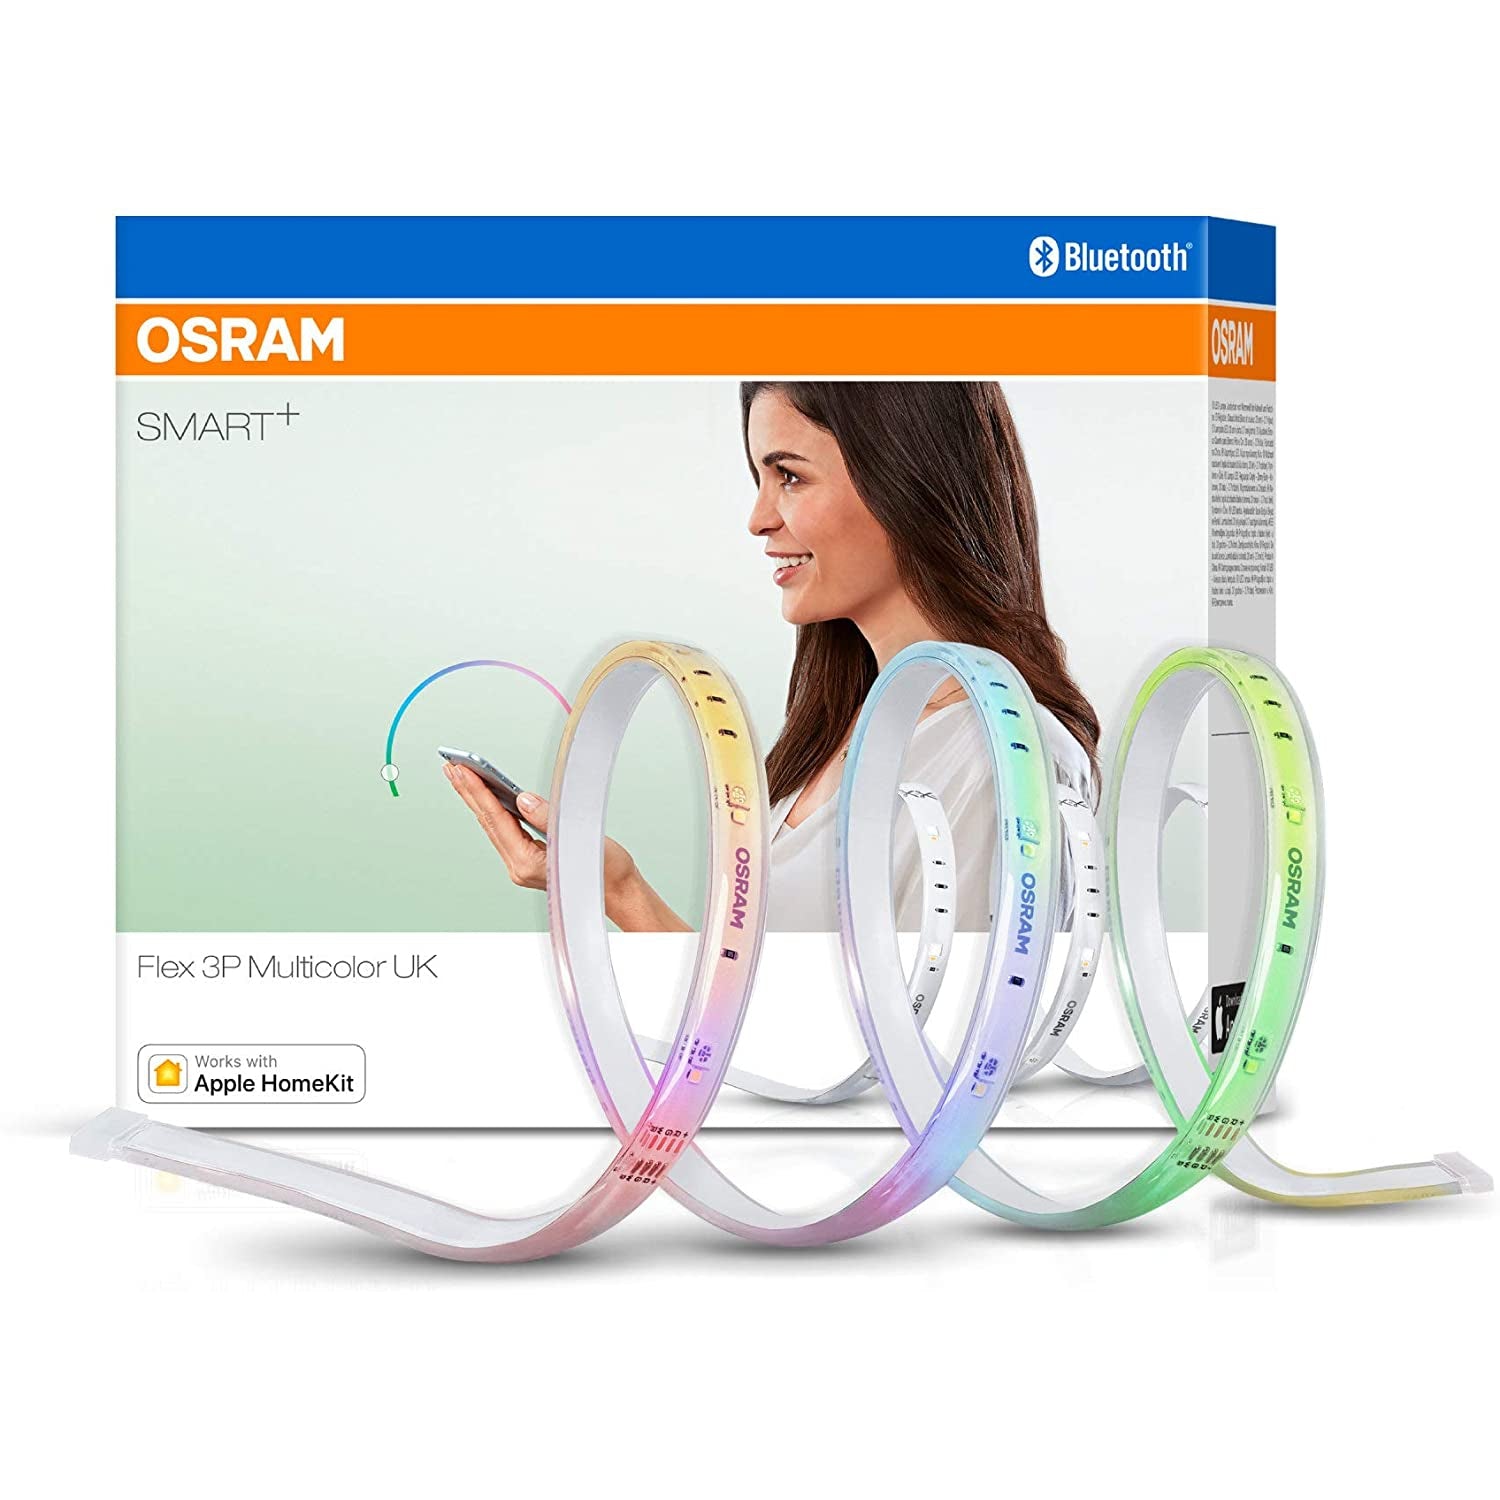 Osram Smart+ Flex 3P Multicolour UK